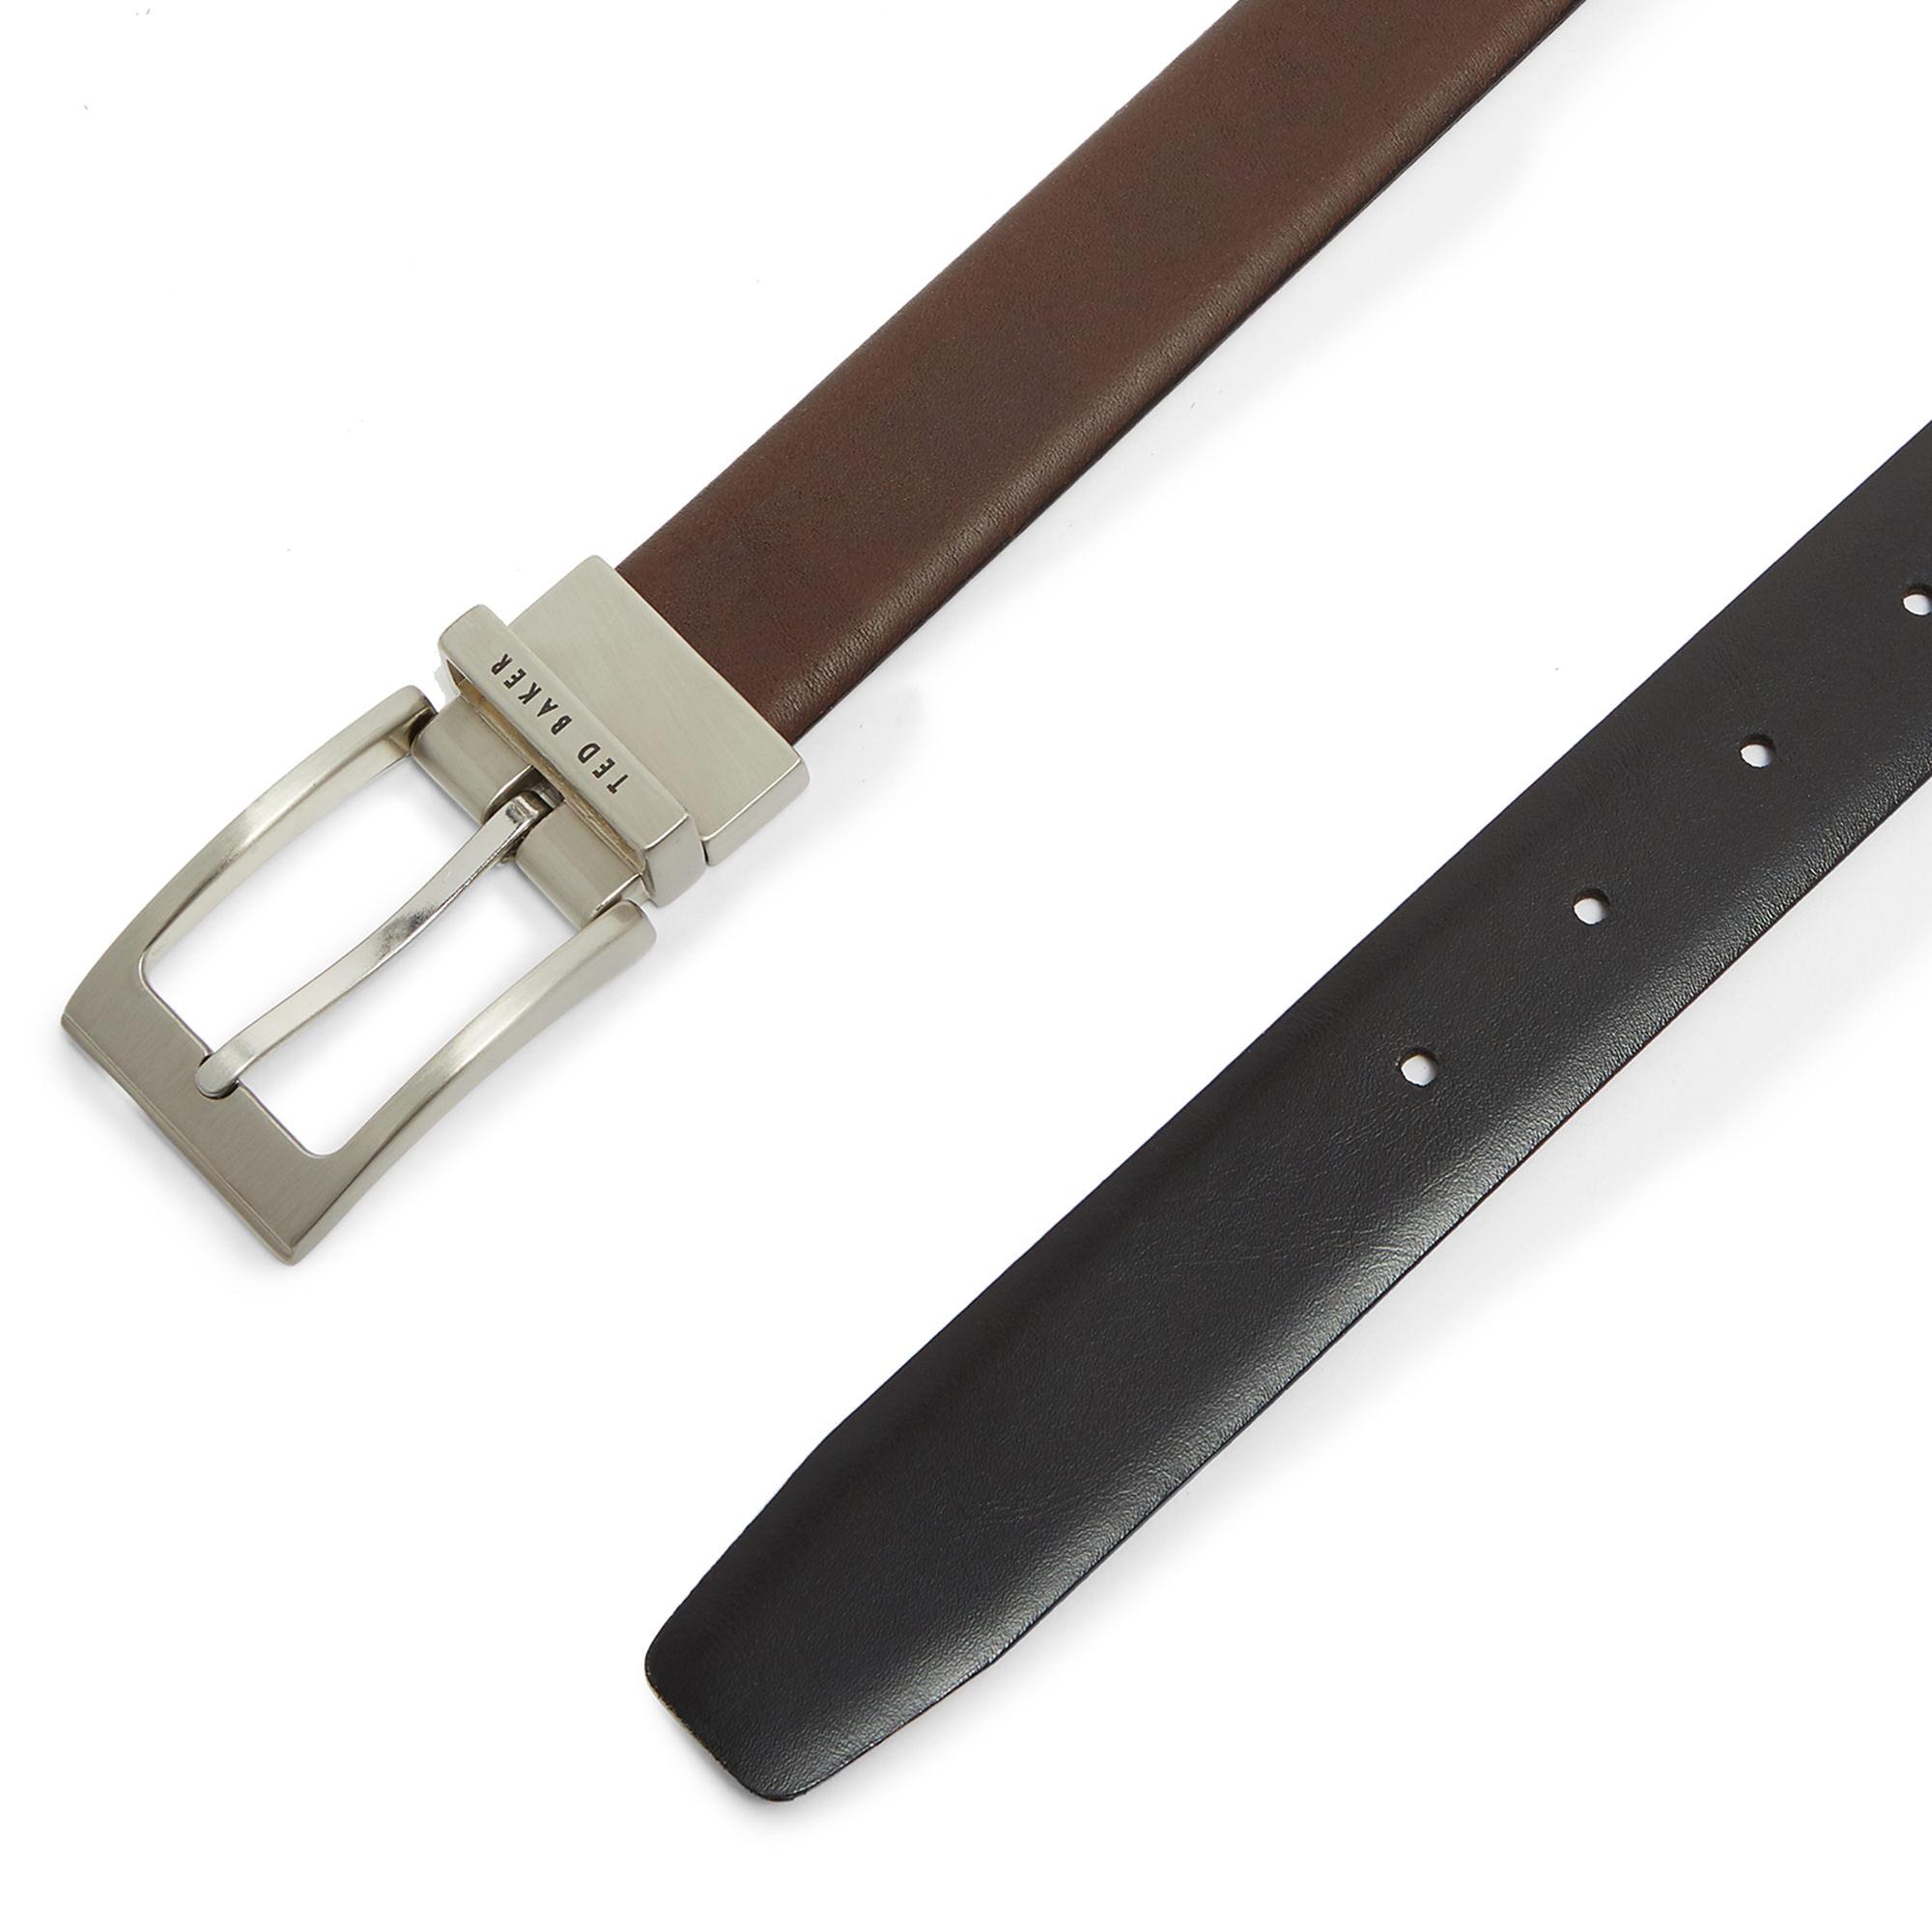 Karmer Reversible Leather Belt